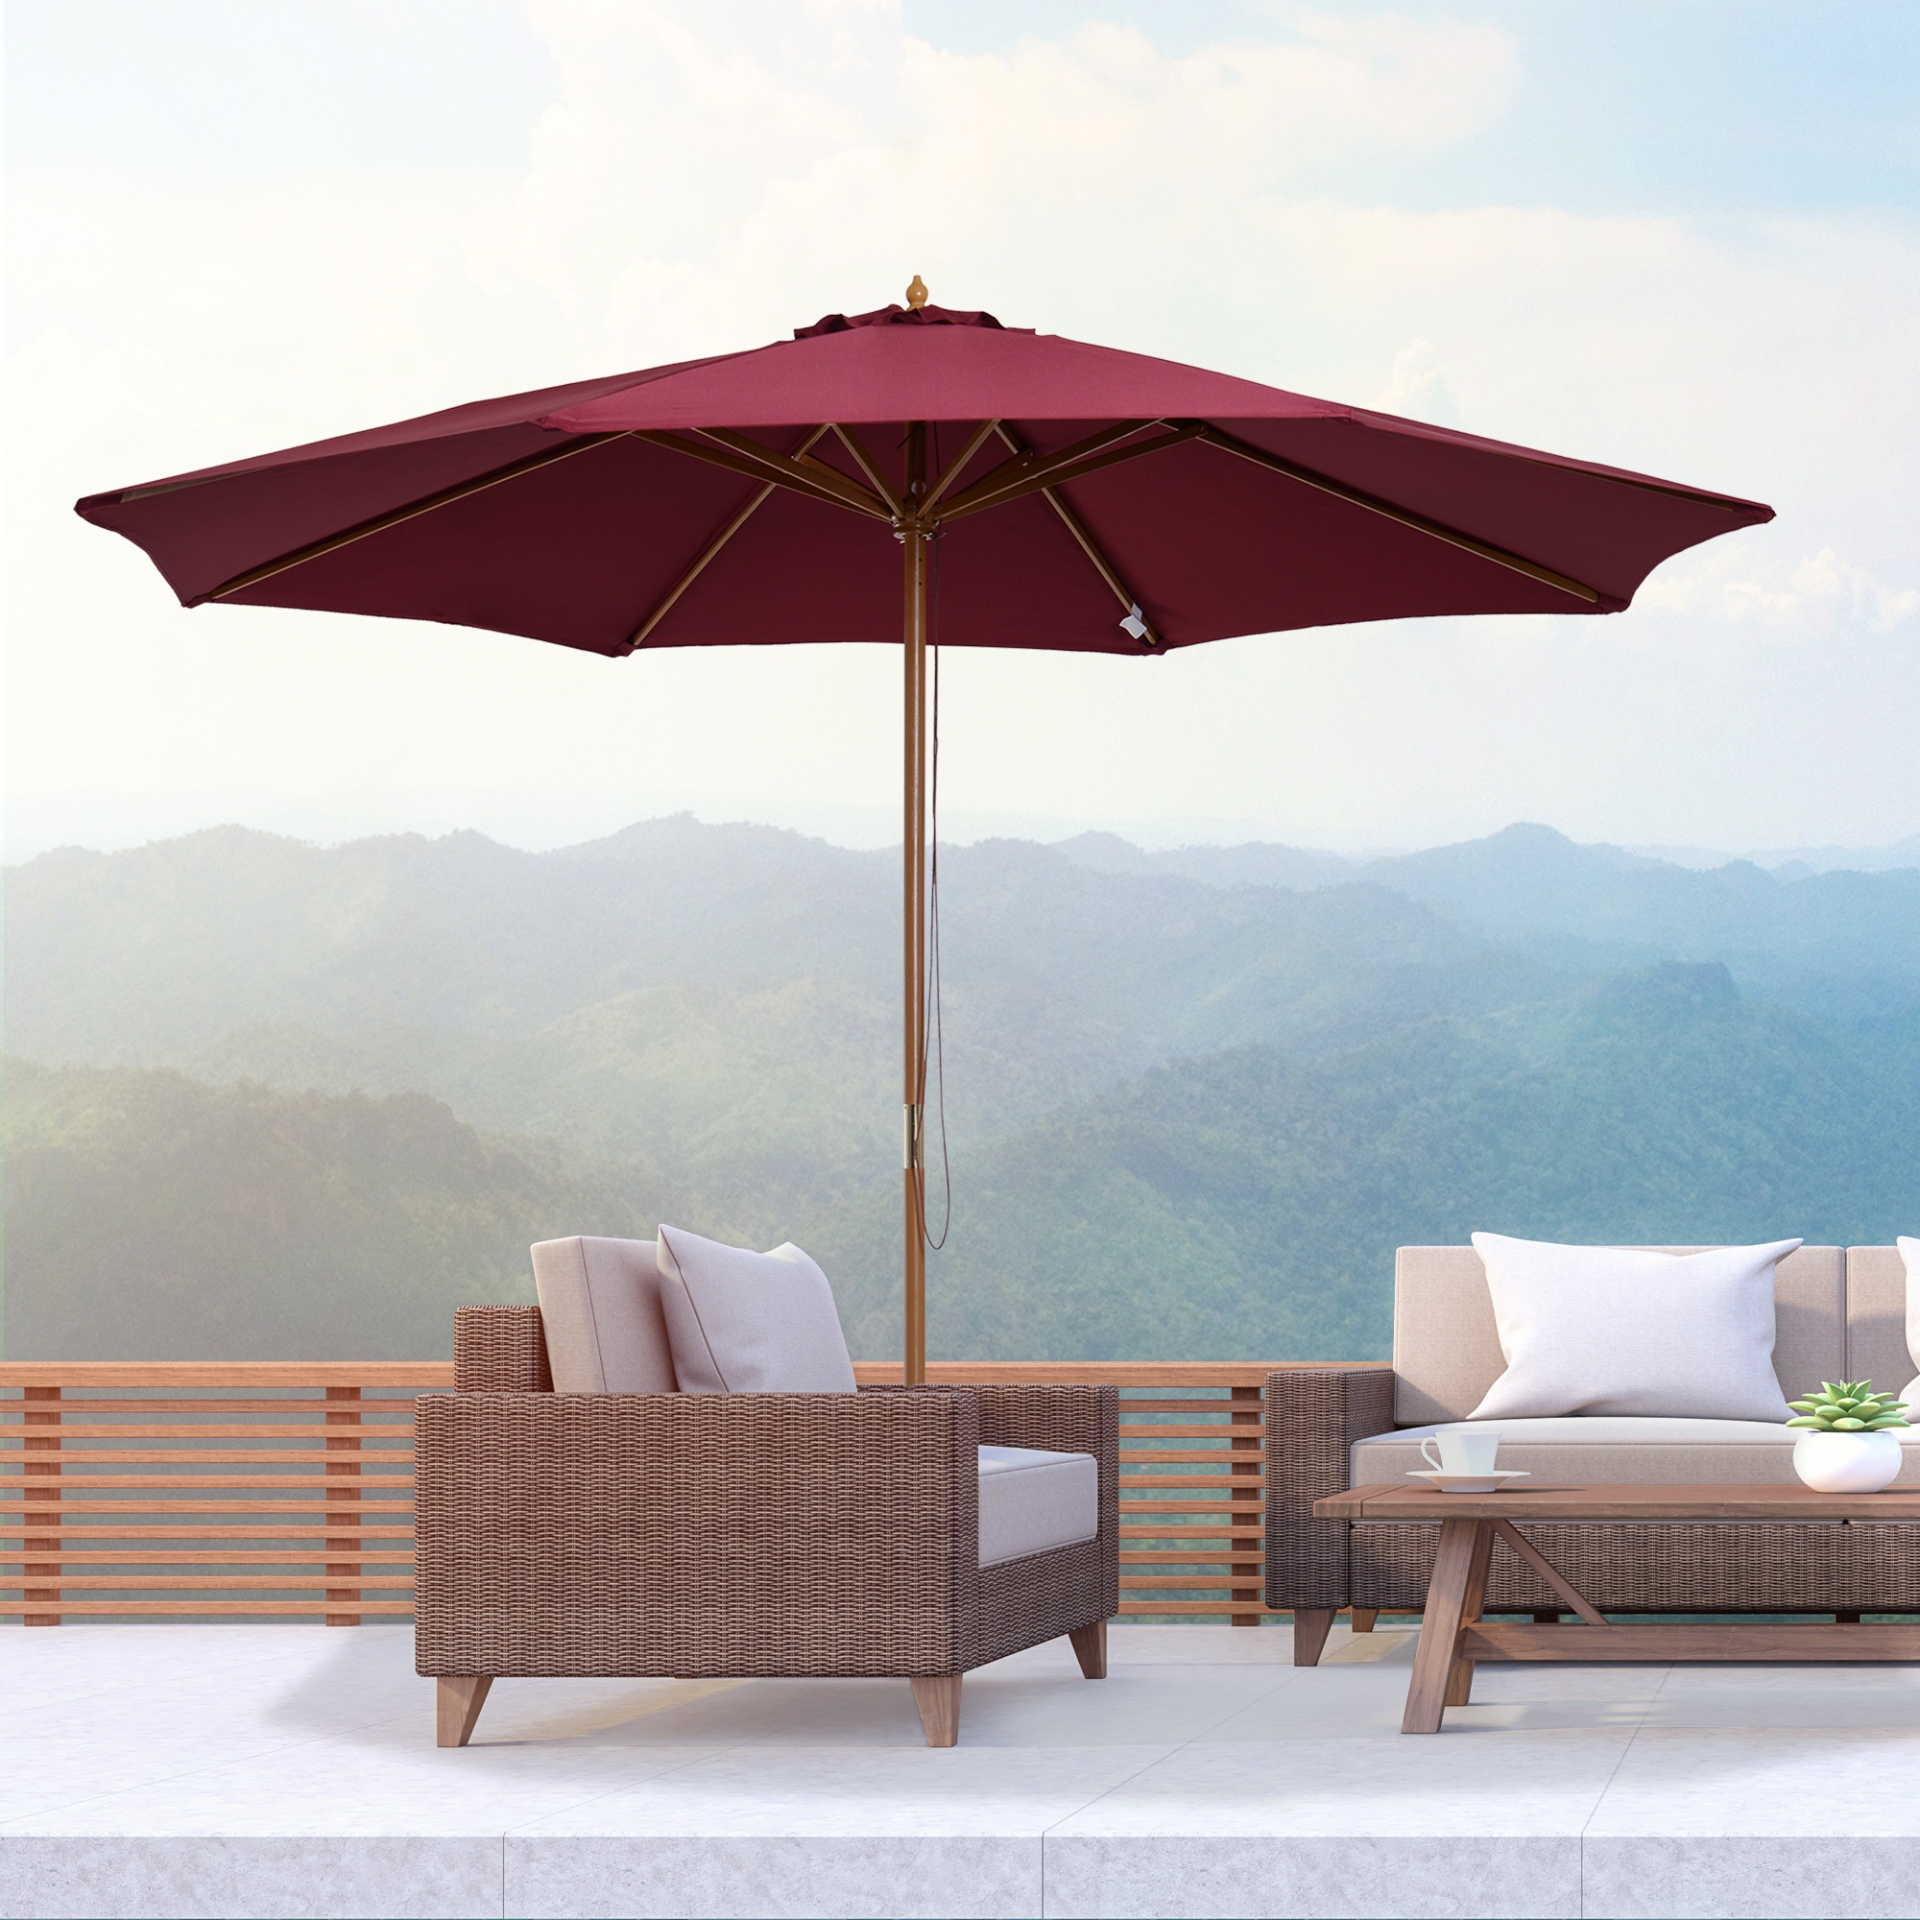 Outsunny 3(m) Fir Wooden Parasol Garden Umbrellas 8 Ribs Bamboo Sun Shade Patio Outdoor Umbrella Canopy, Wine Red